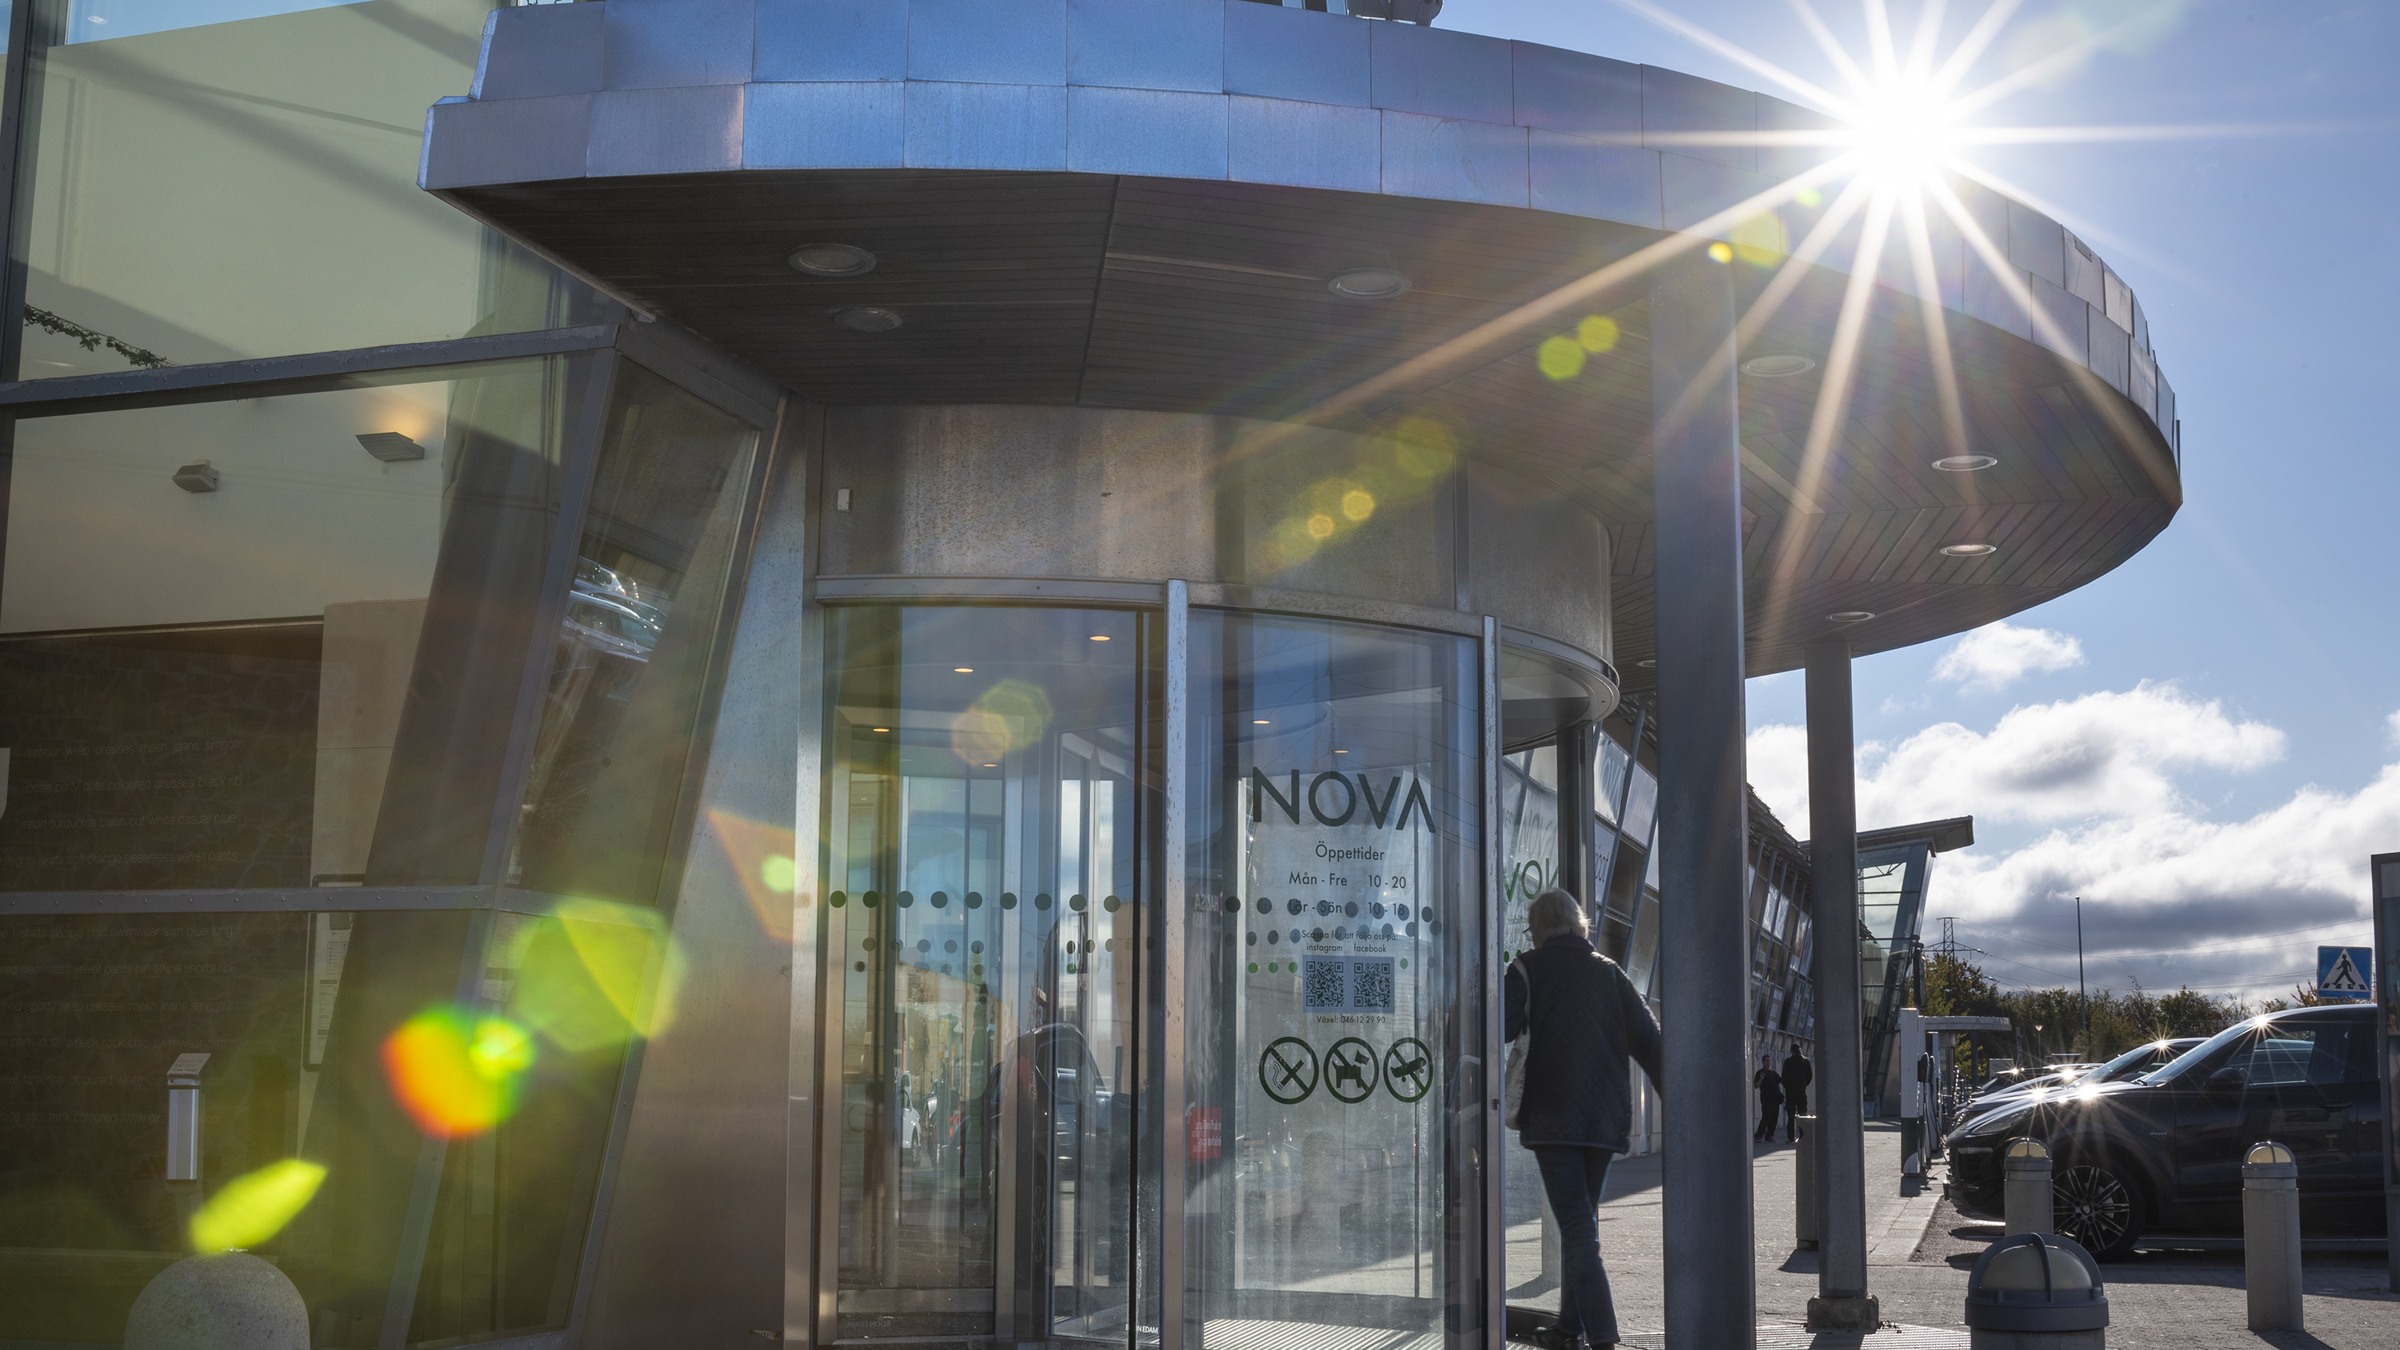 Ragn-Sells och Skandia har samarbetet för att öka återvinningen på köpcentrumet Nova